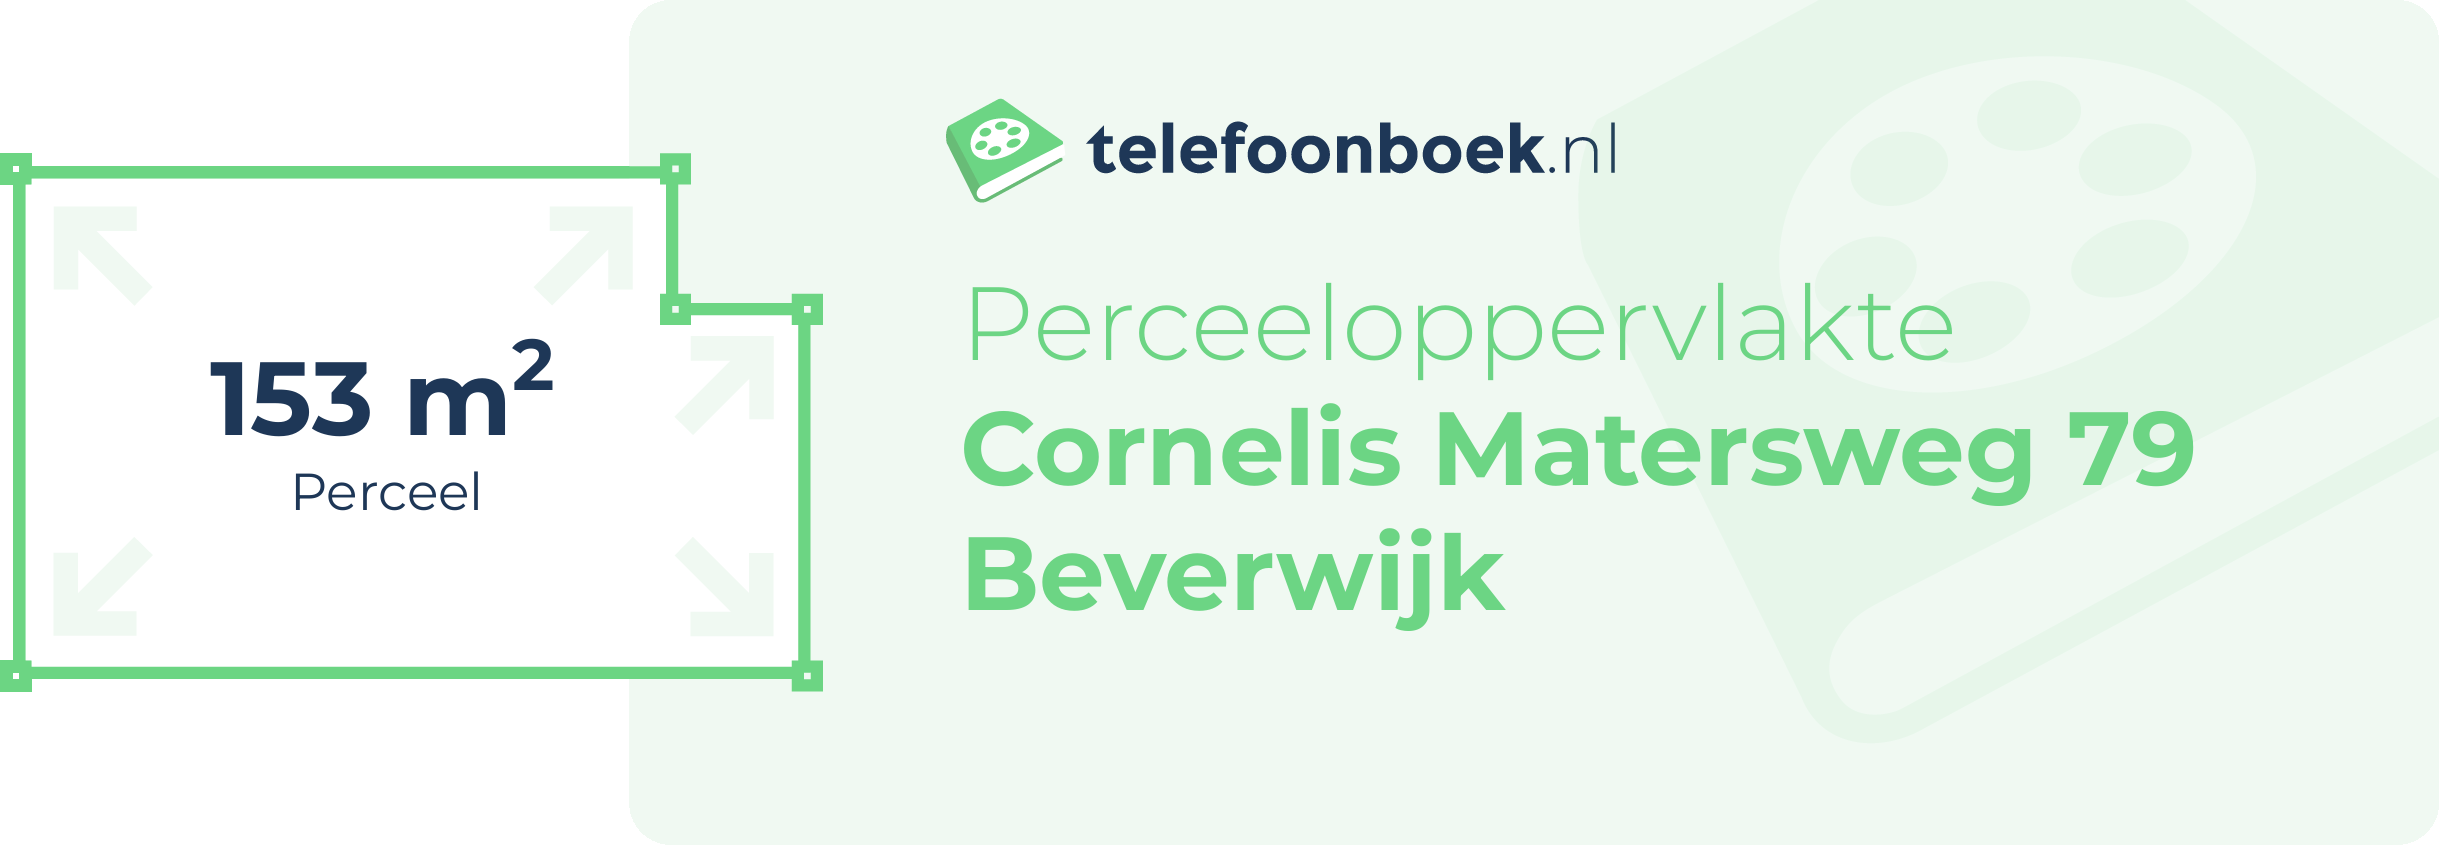 Perceeloppervlakte Cornelis Matersweg 79 Beverwijk